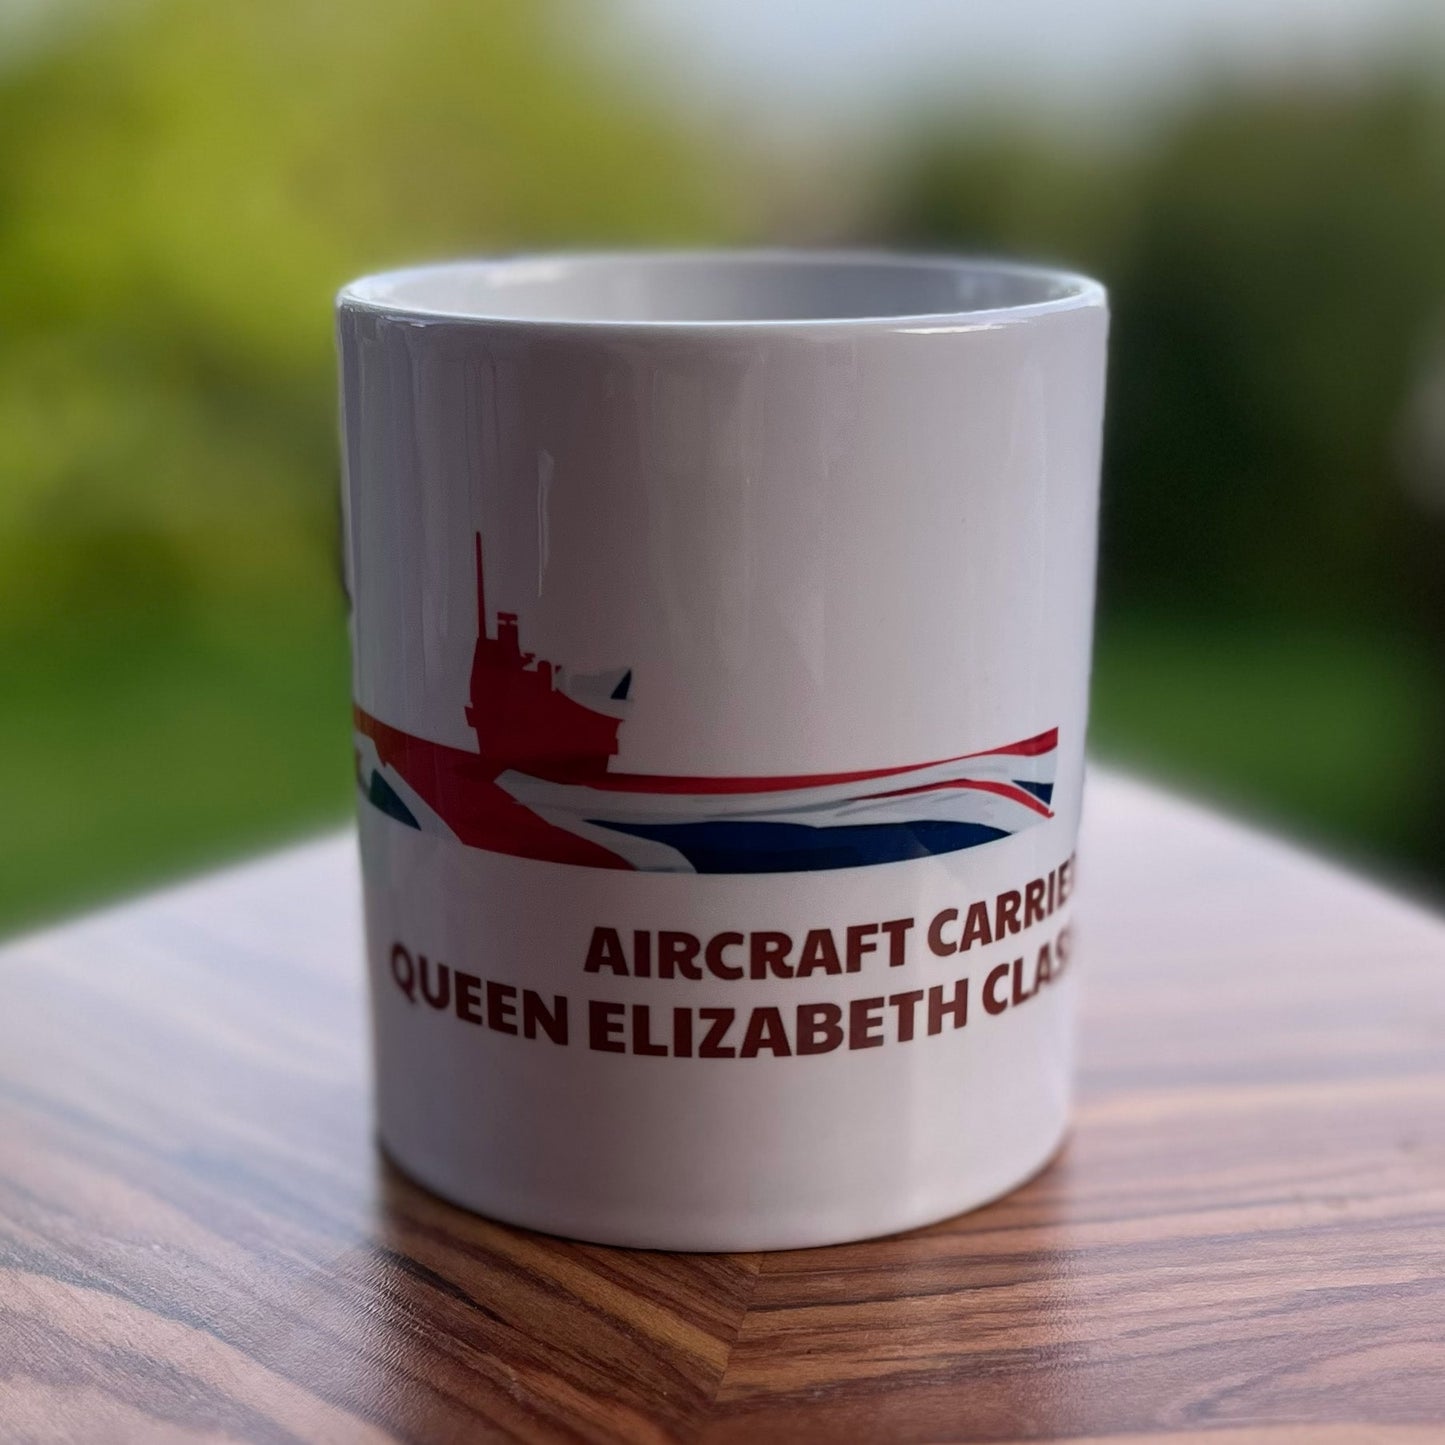 Queen Elizabeth Class Union Flag Mug